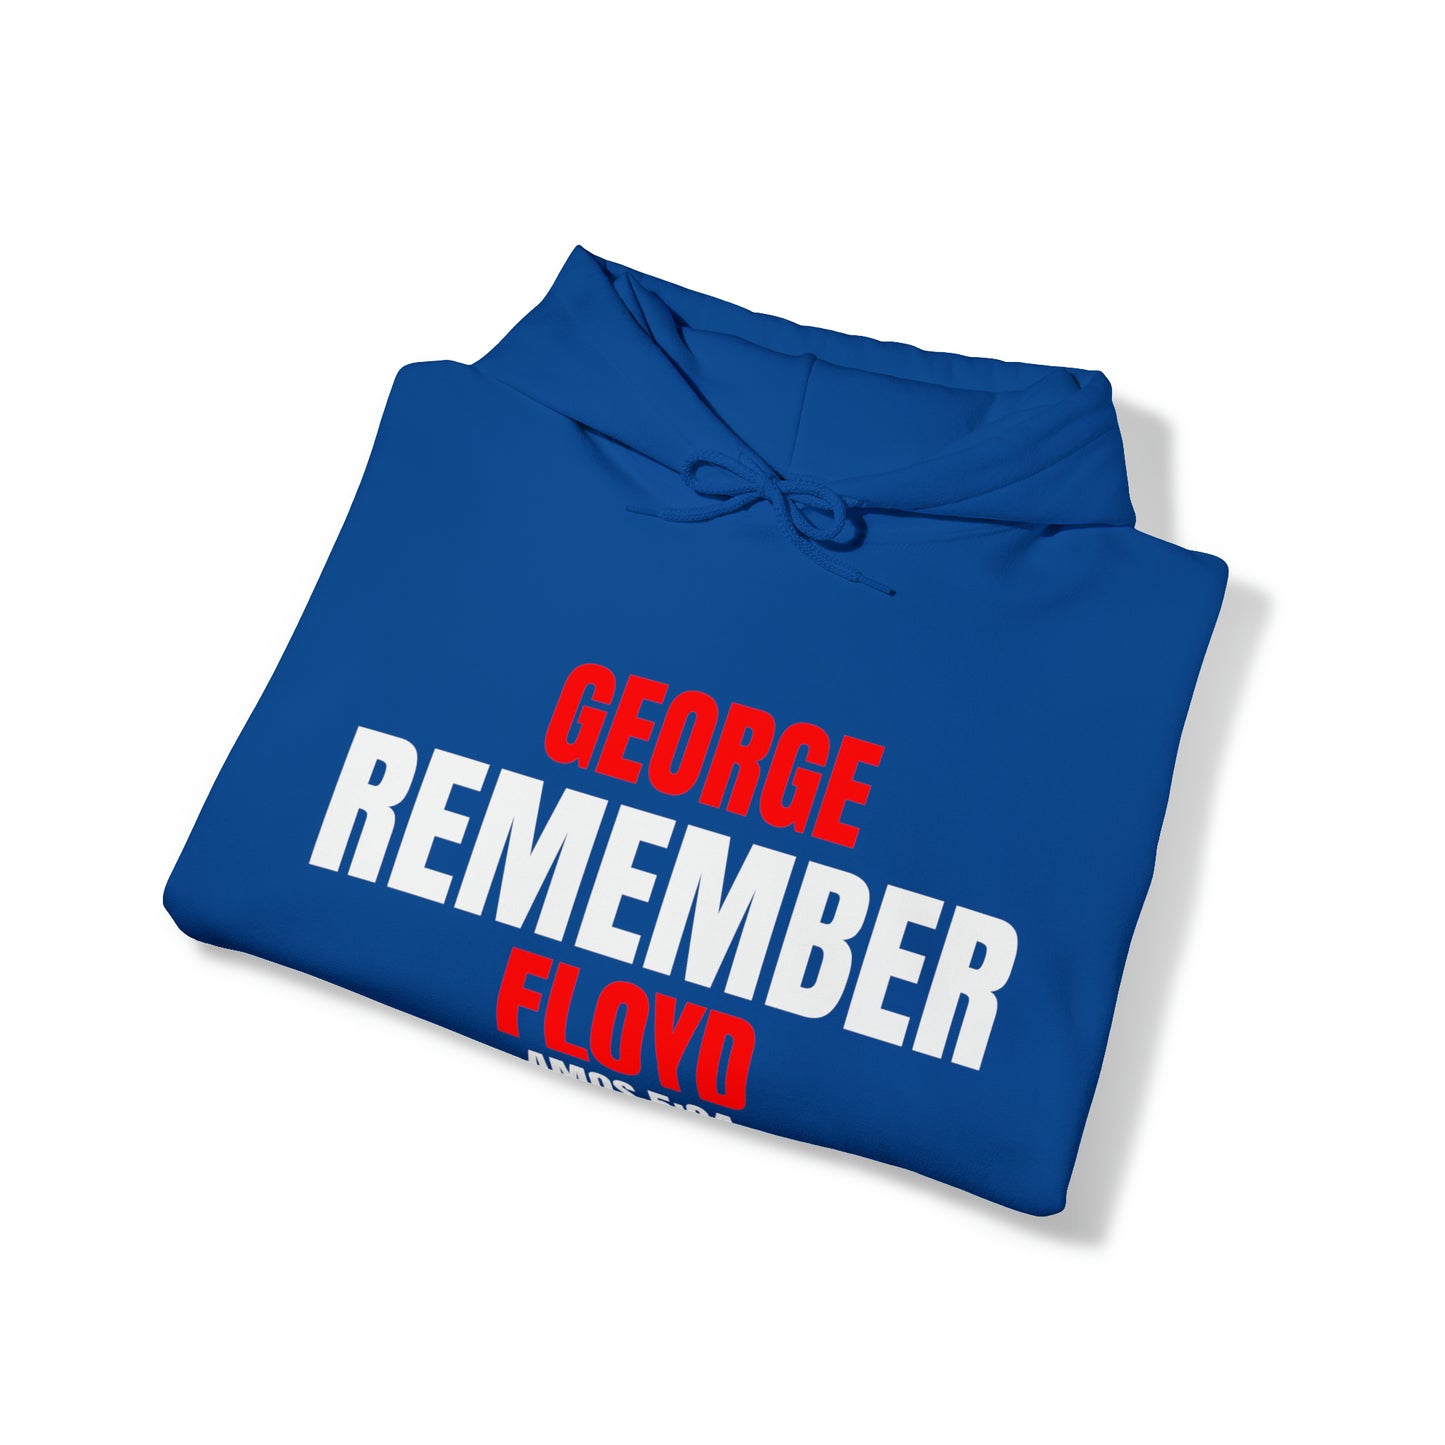 The Remember Series-George Floyd-Unisex Heavy Blend™ Hooded Sweatshirt